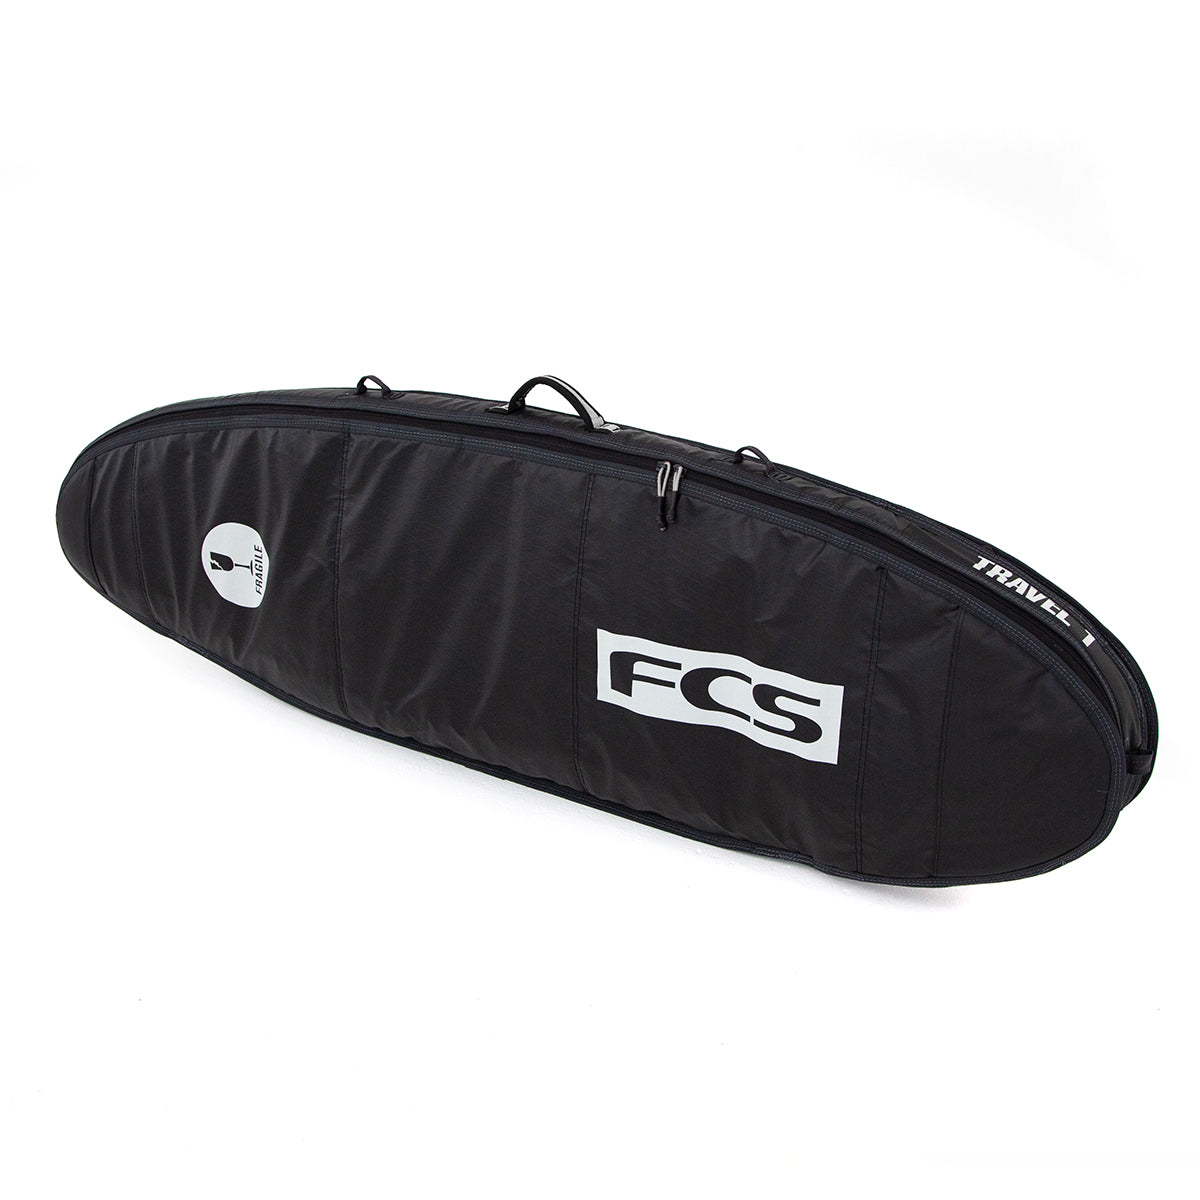 FCS Travel 1 Funboard Boardbag Black-Grey 8ft0in